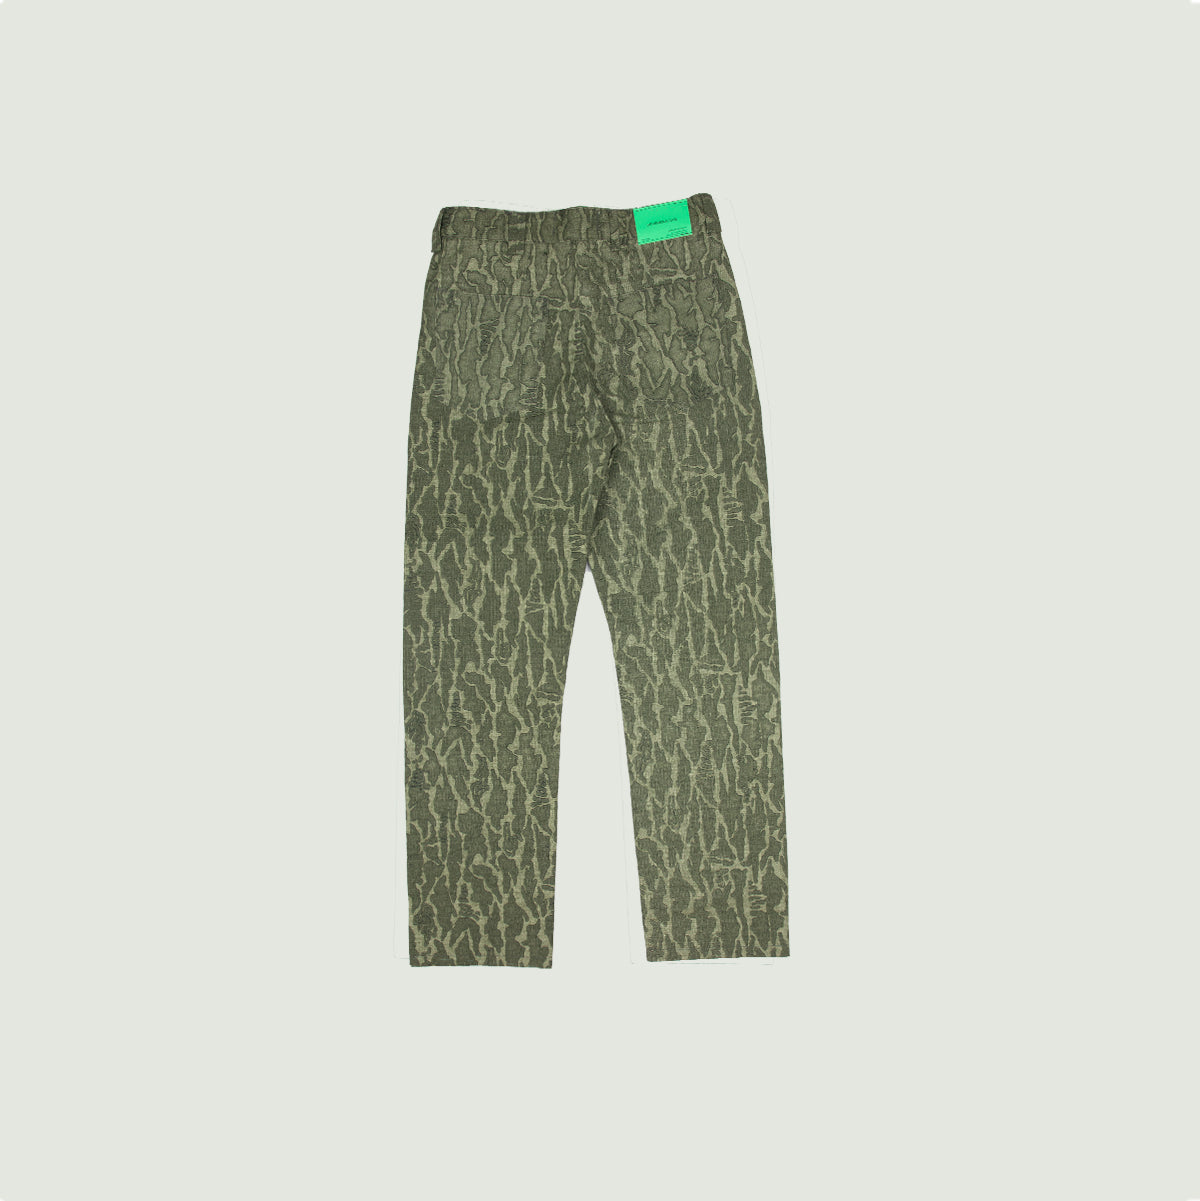 Militia Green bush camo pants